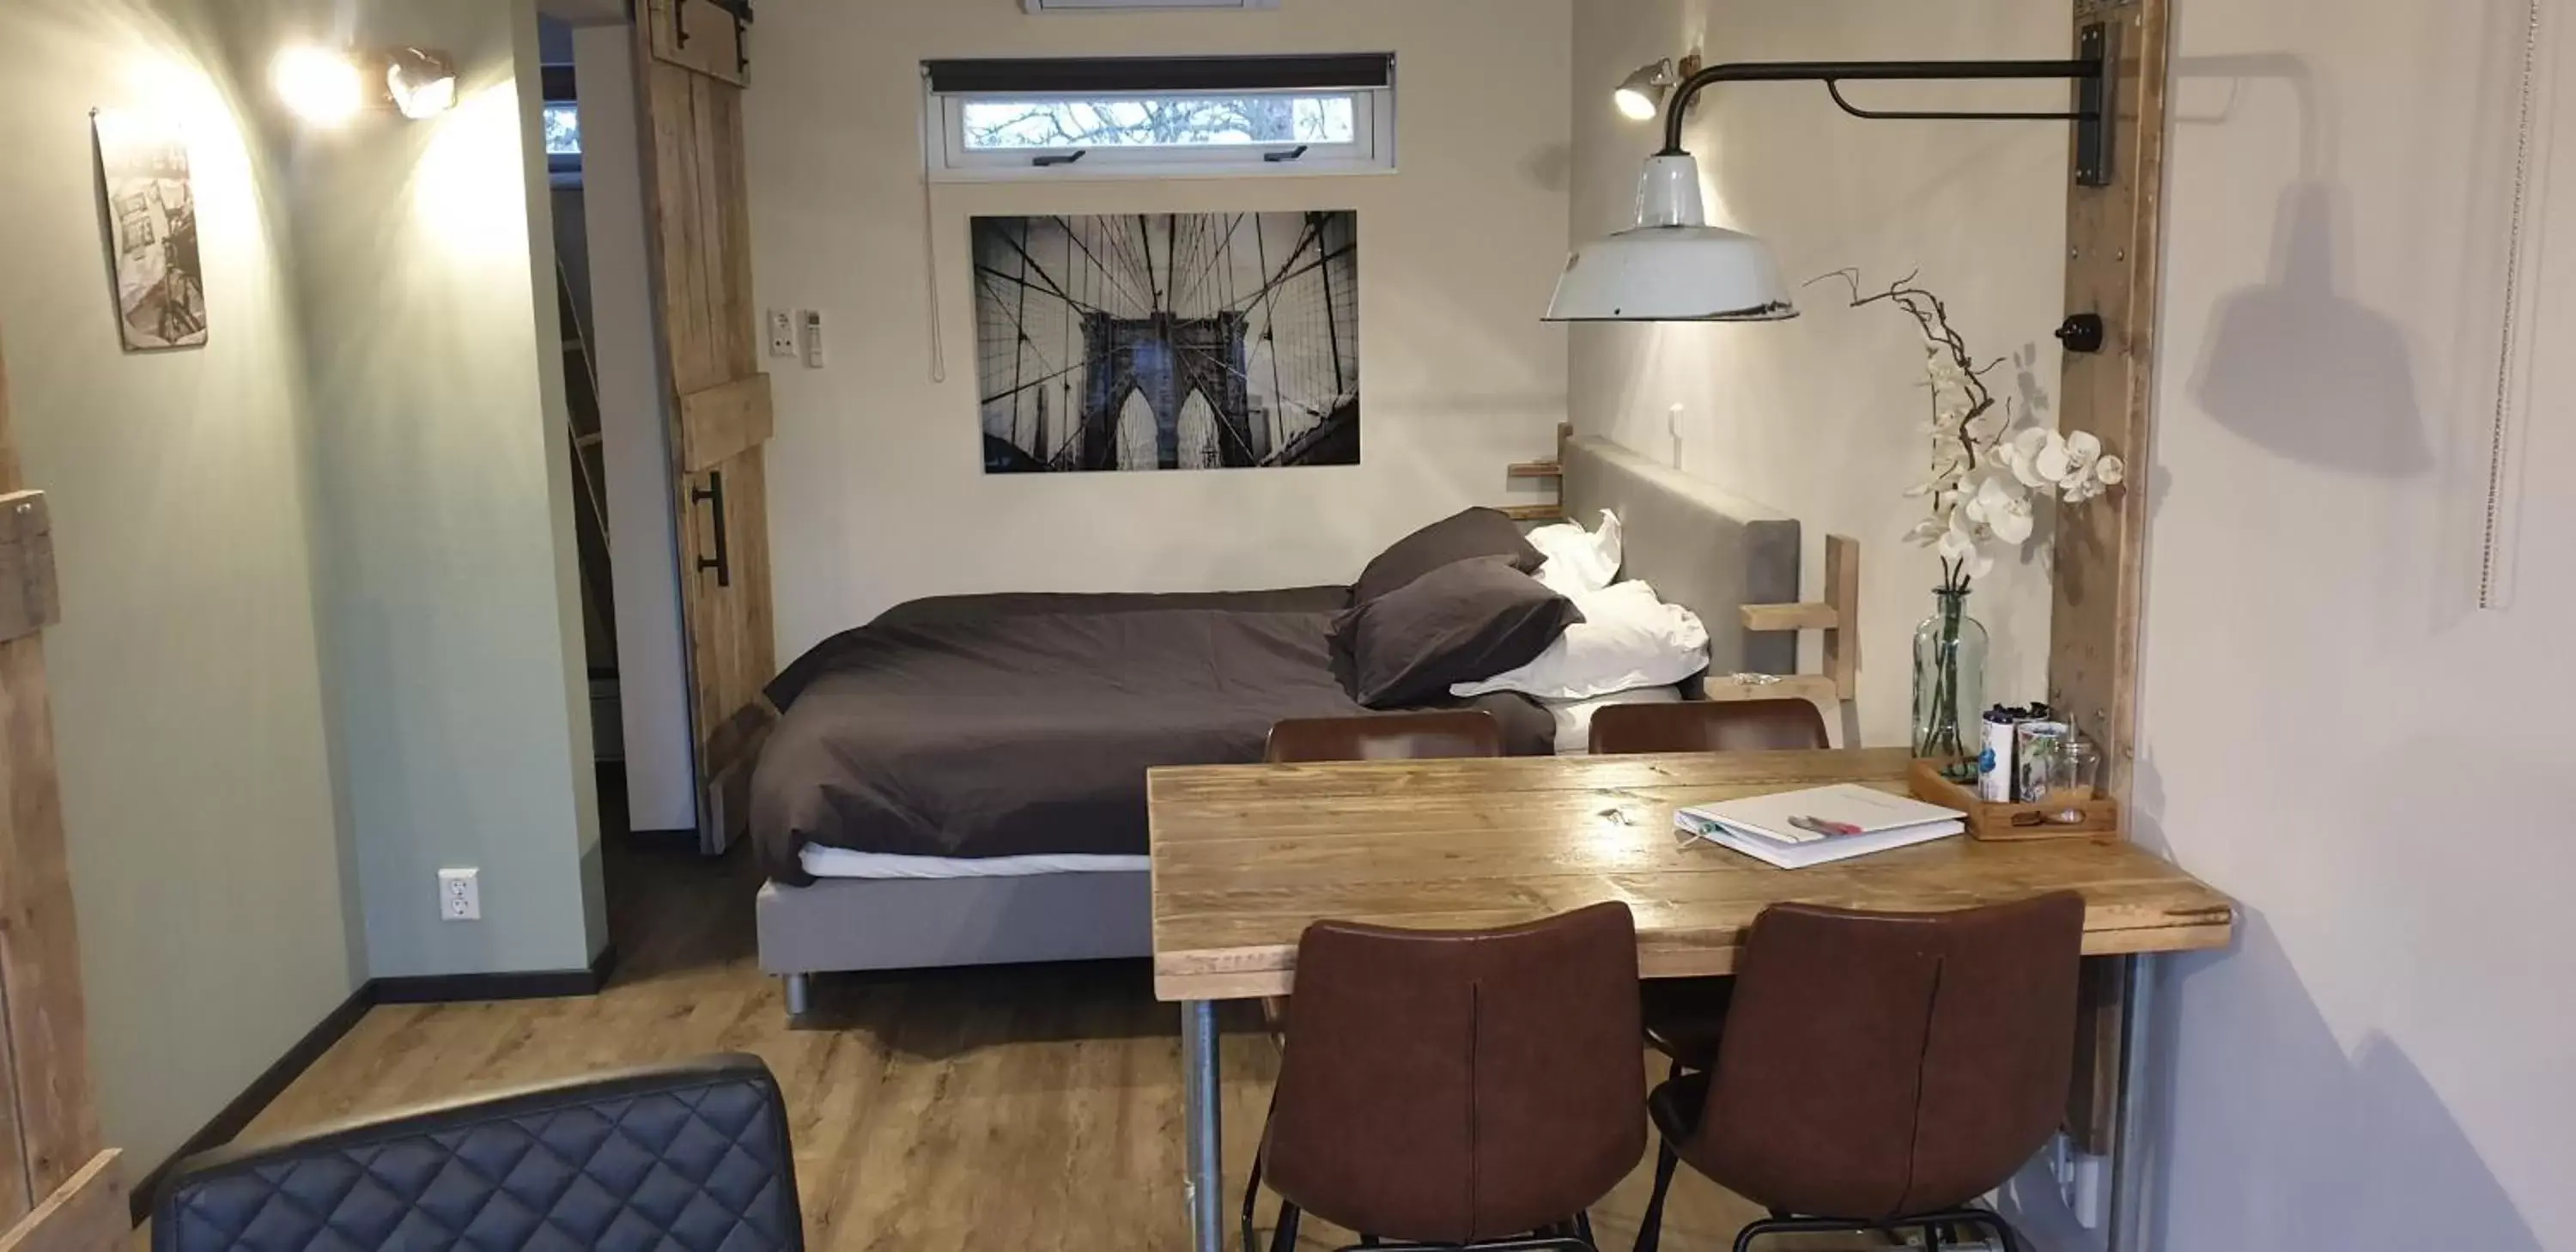 Photo of the whole room in Bed & Breakfast "Aan de Bagijnstraat".